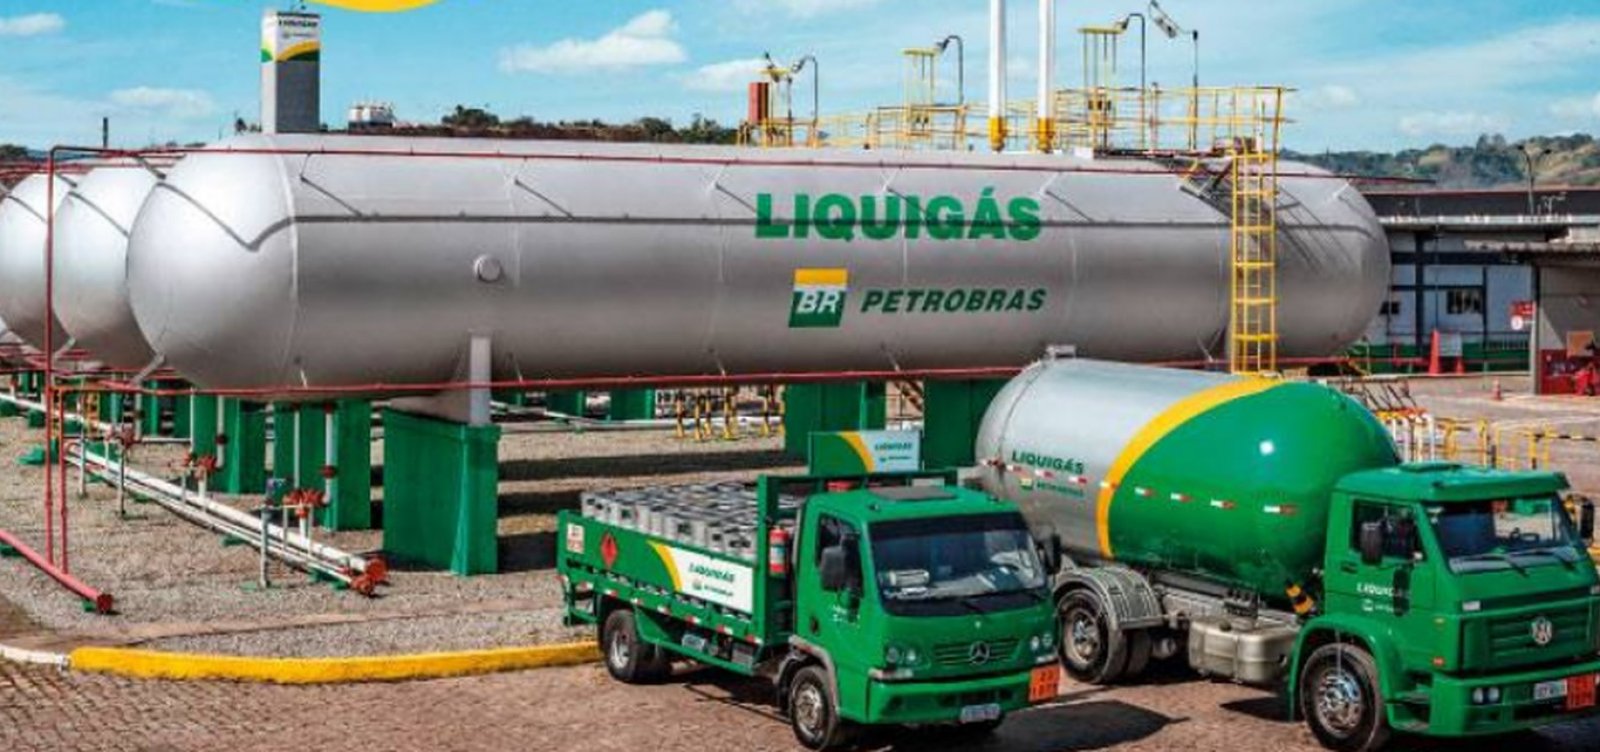 Petrobras recebe oferta final de R$ 3,7 bilhões pela Liquigás